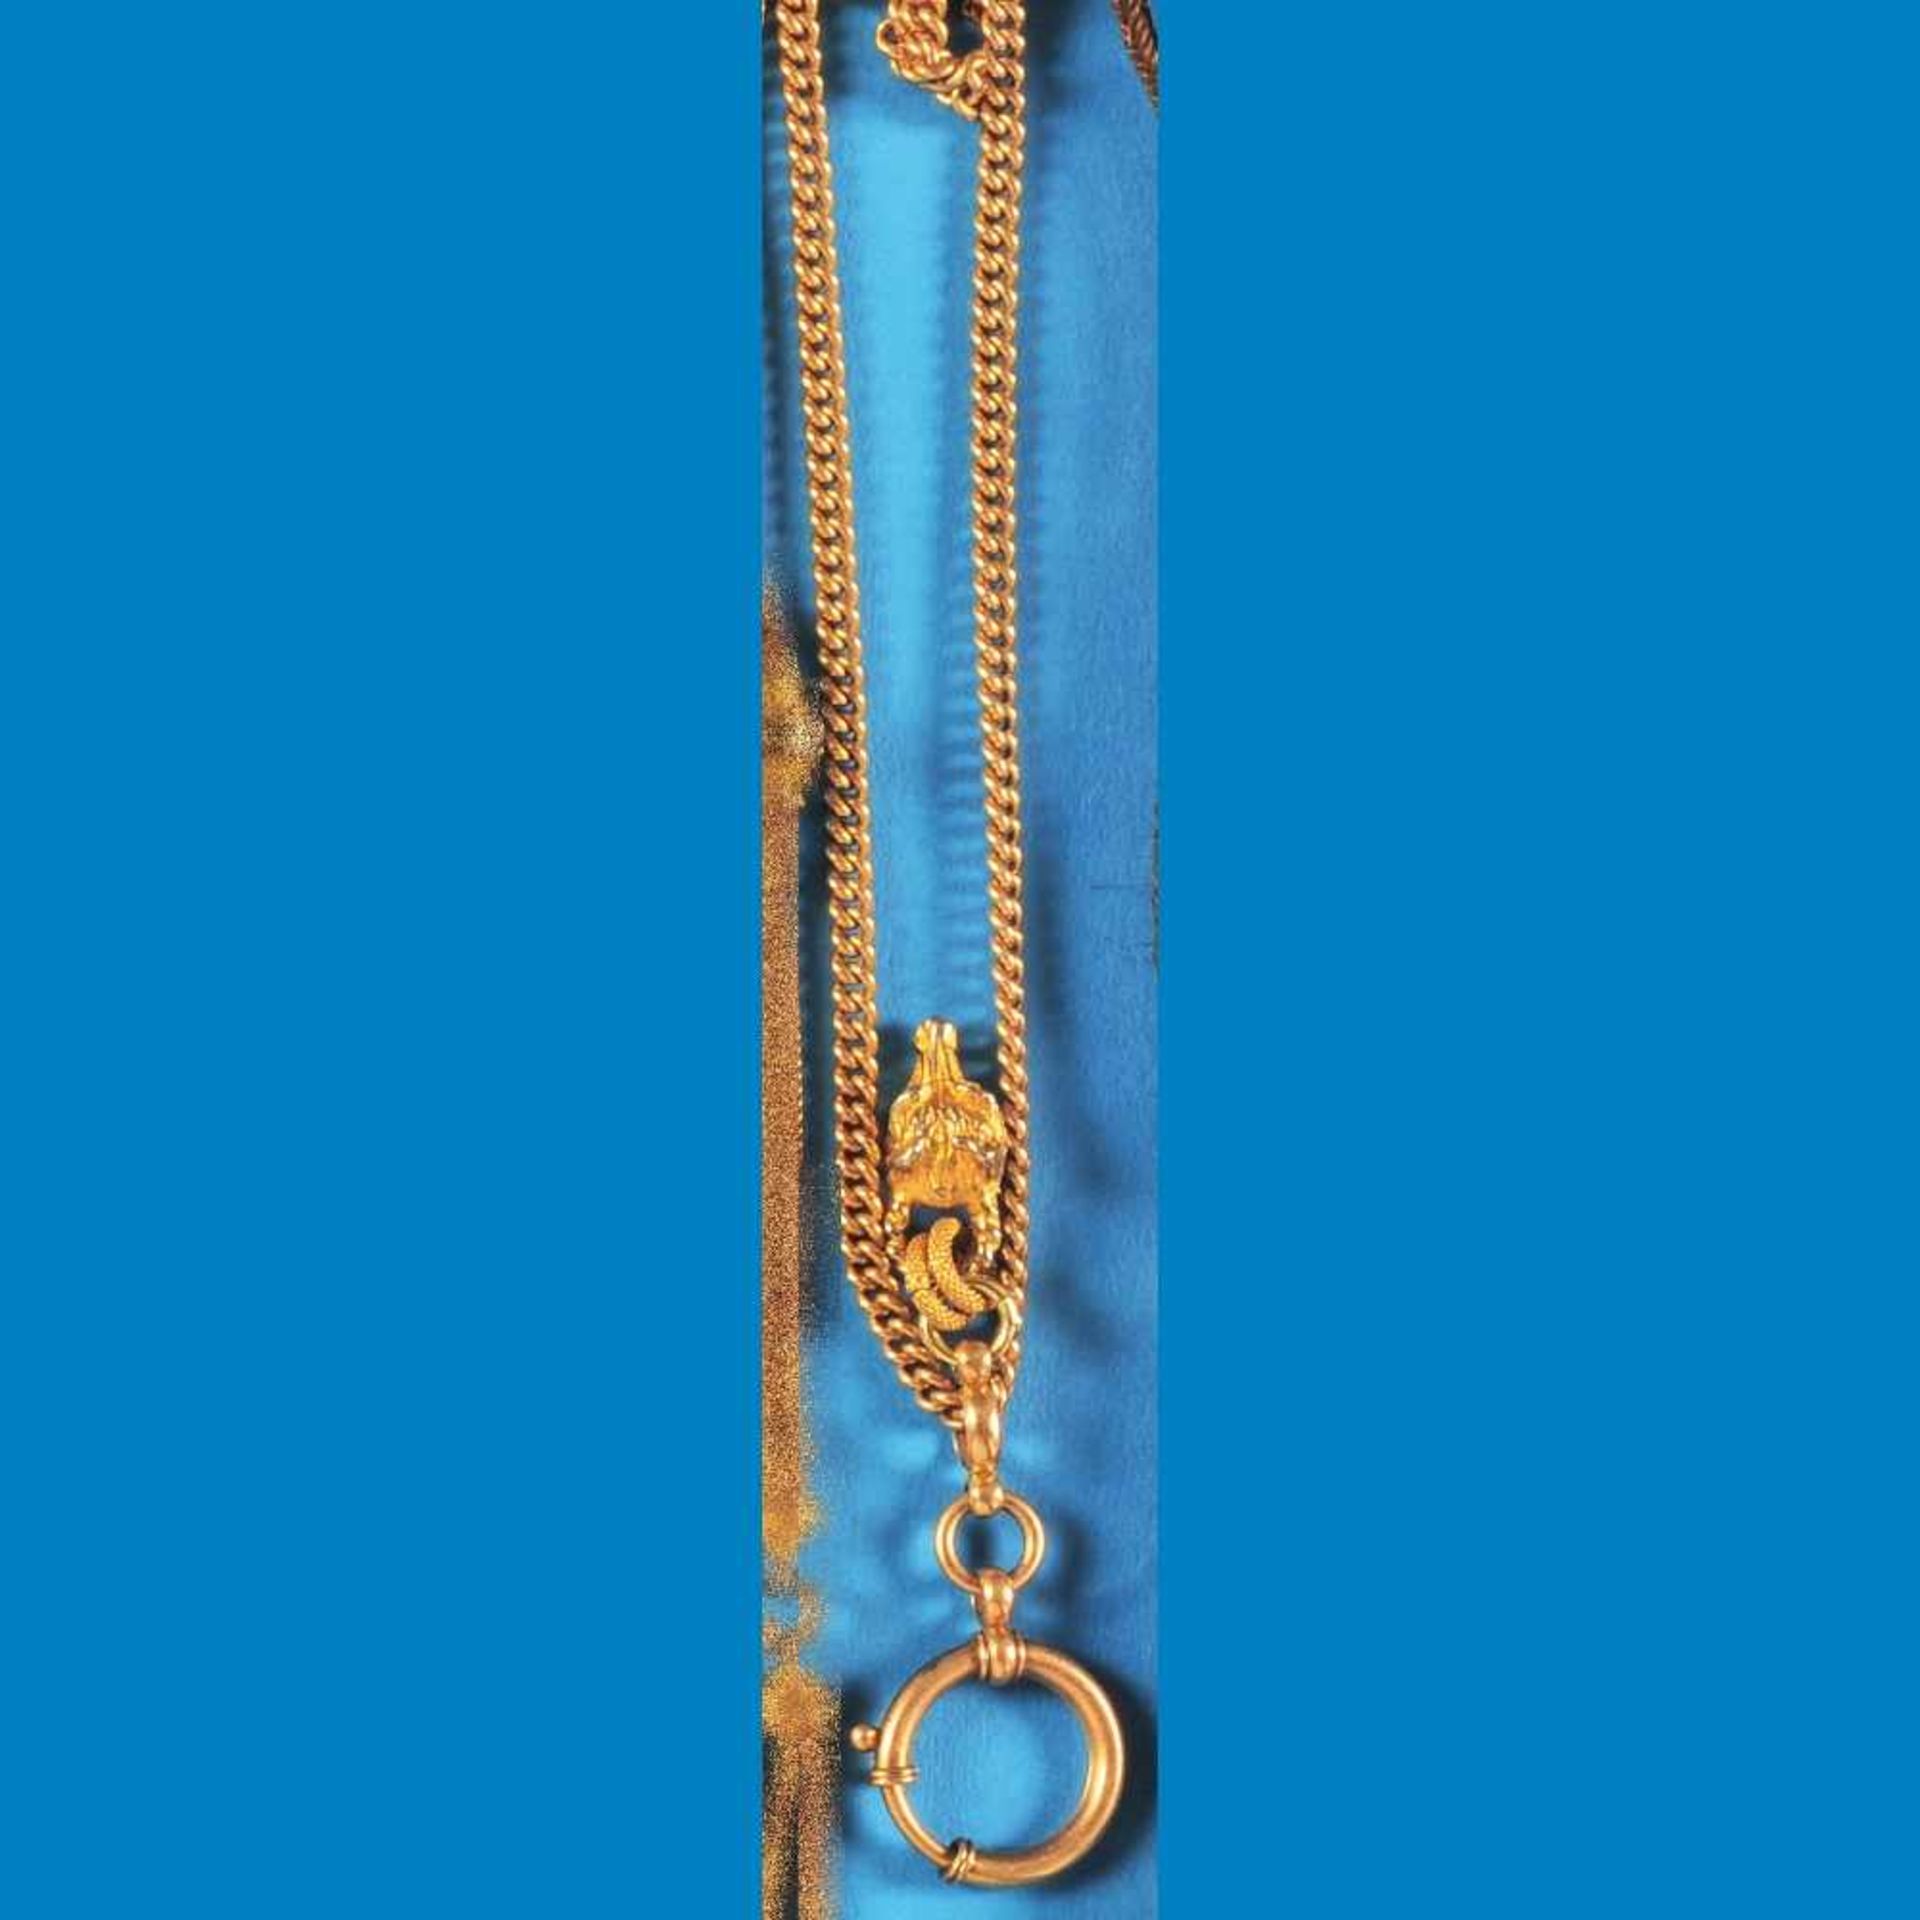 Chain with gold-plated doghead-pendantDurchzugskette mit vergoldetem Hundekopf-Anhänger, be